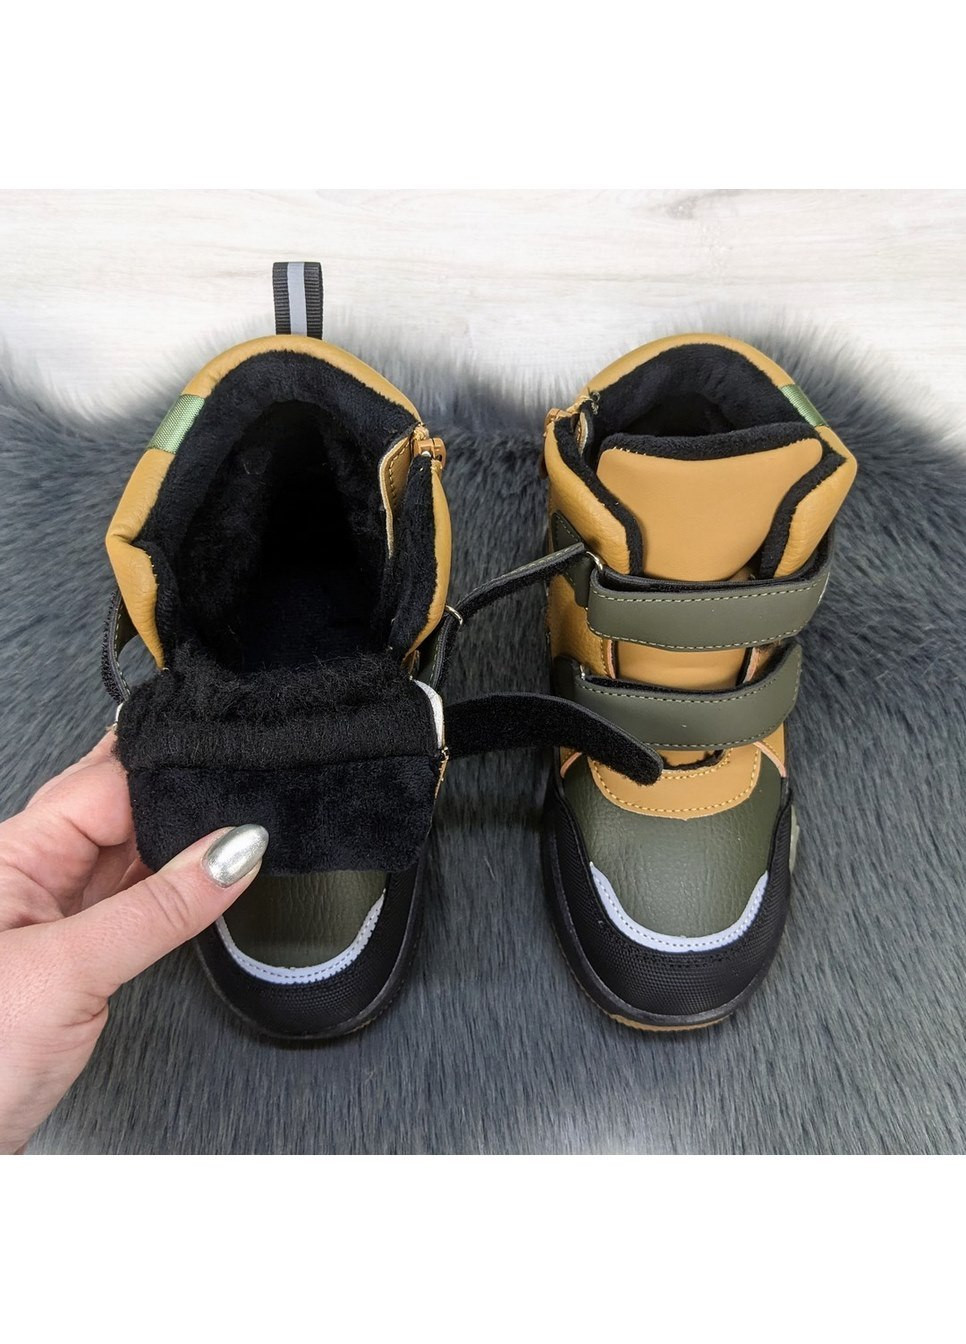 Хаки повседневные осенние ботинки детские зимные для мальчика Леопард